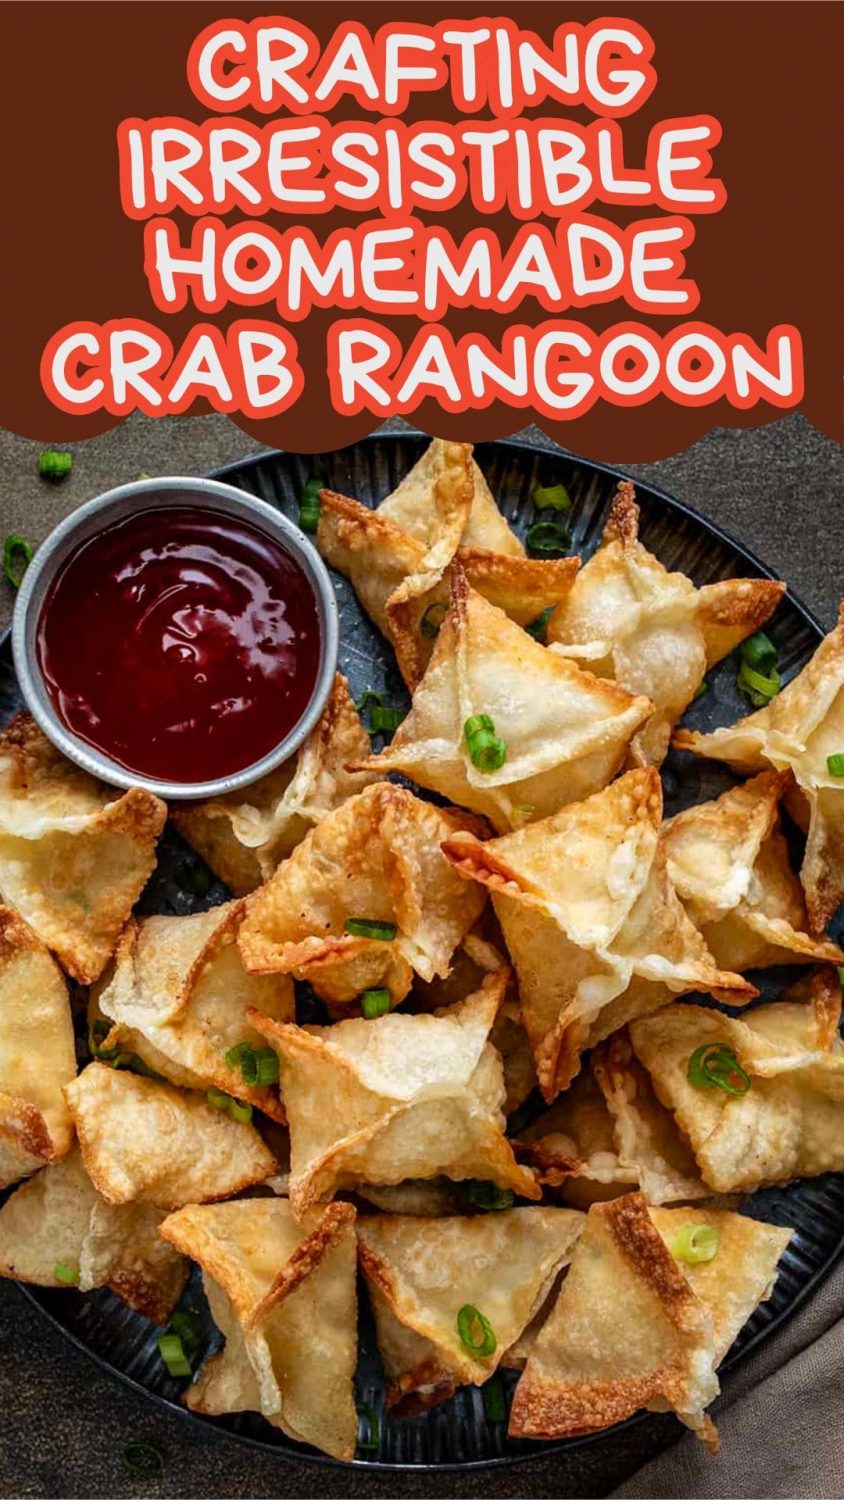 Crafting Irresistible Homemade Crab Rangoon